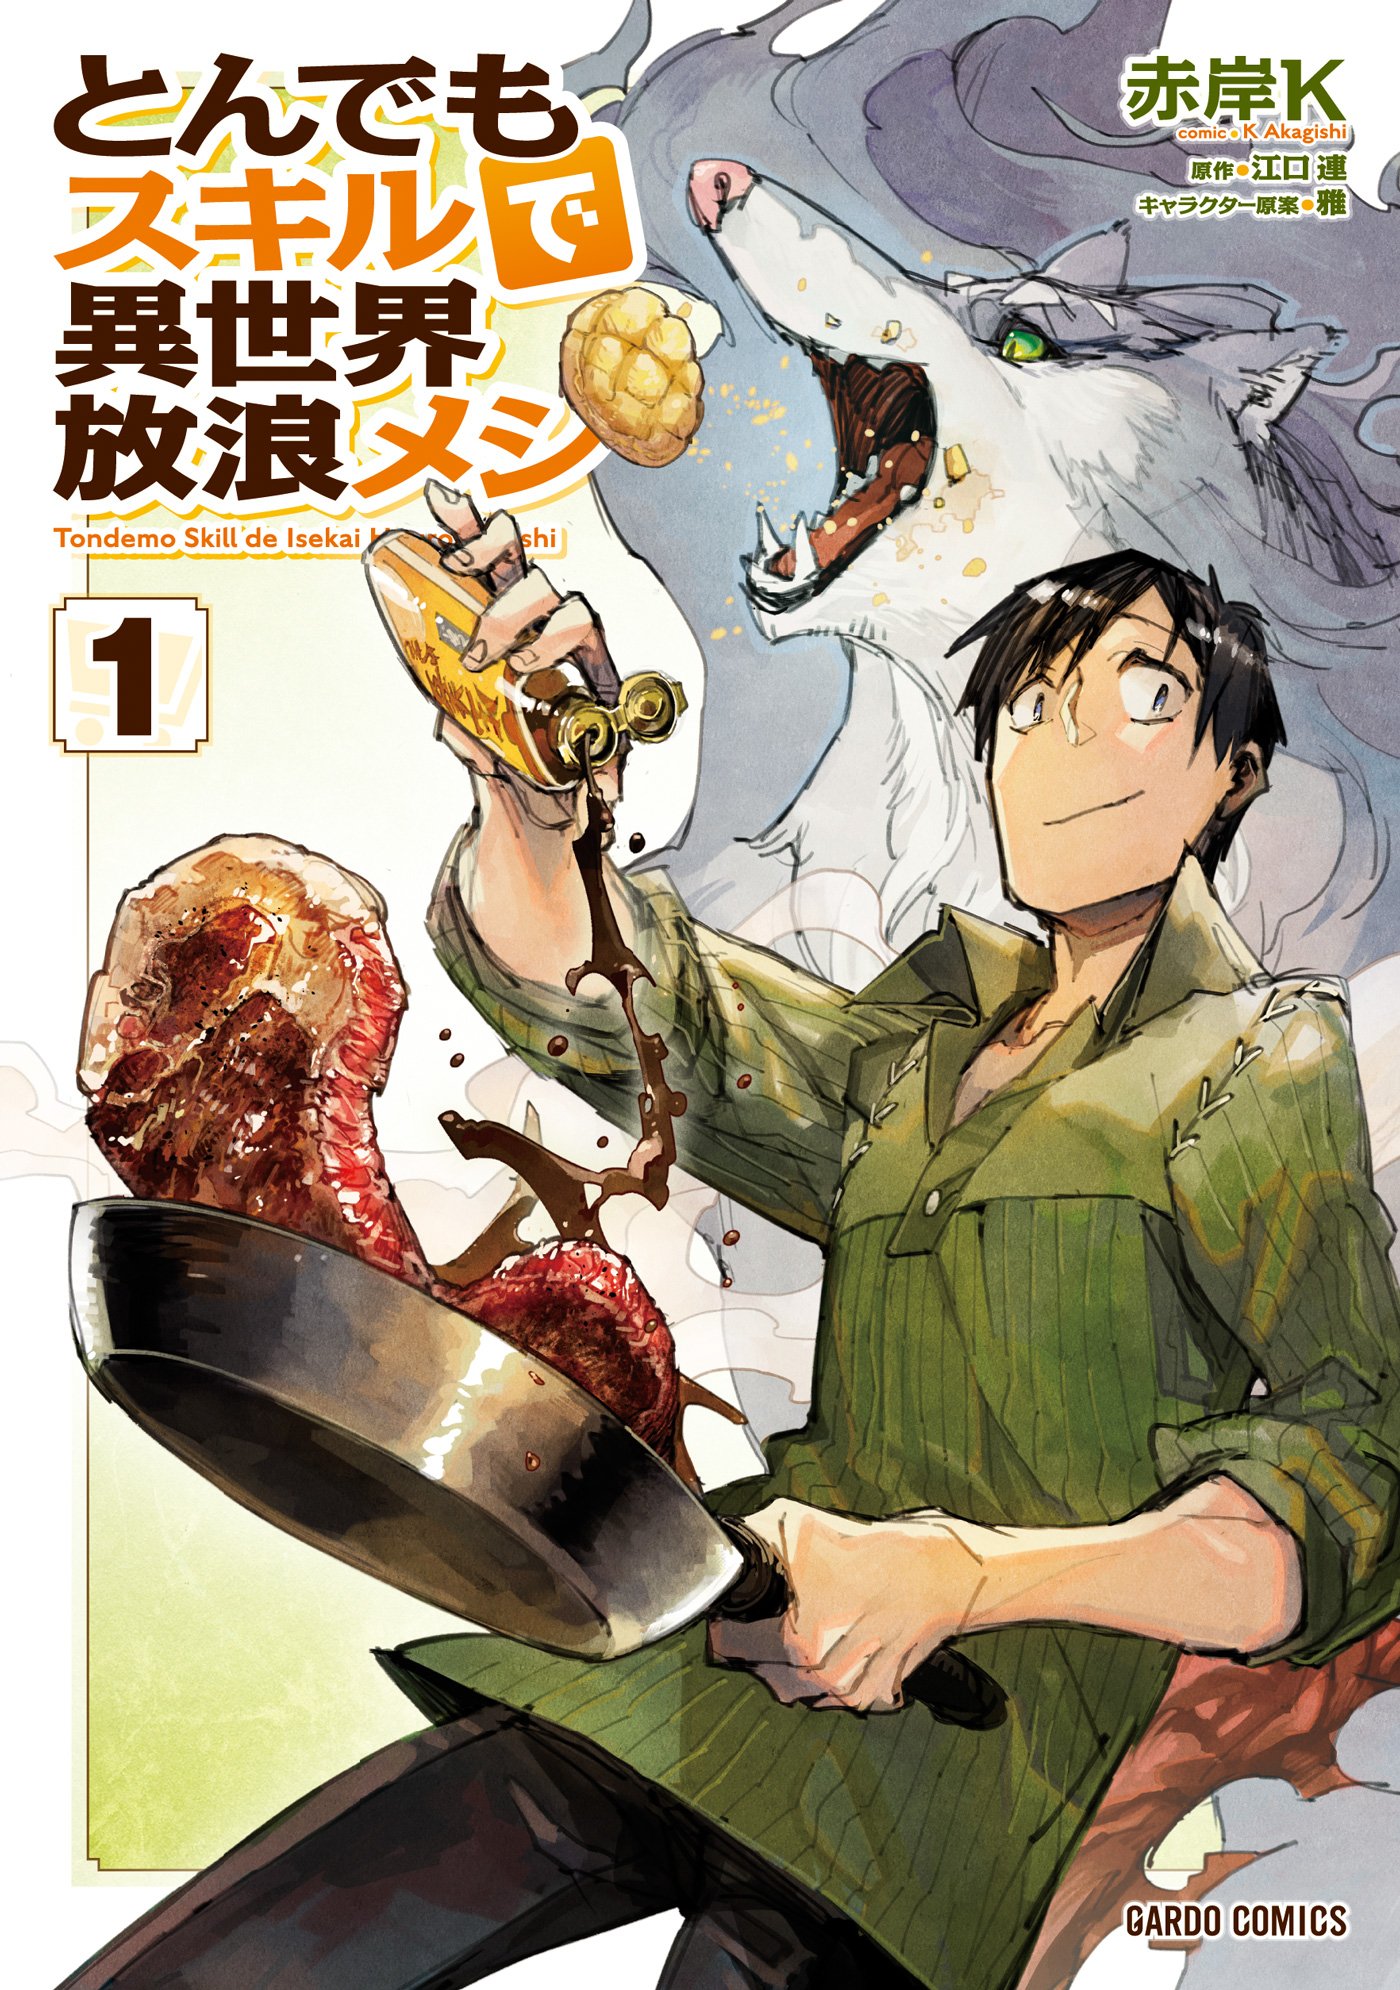 Tondemo Skill de Isekai Hourou Meshi (Manga) - 1 éditions - Tondemo Skill De Isekai Hourou Meshi